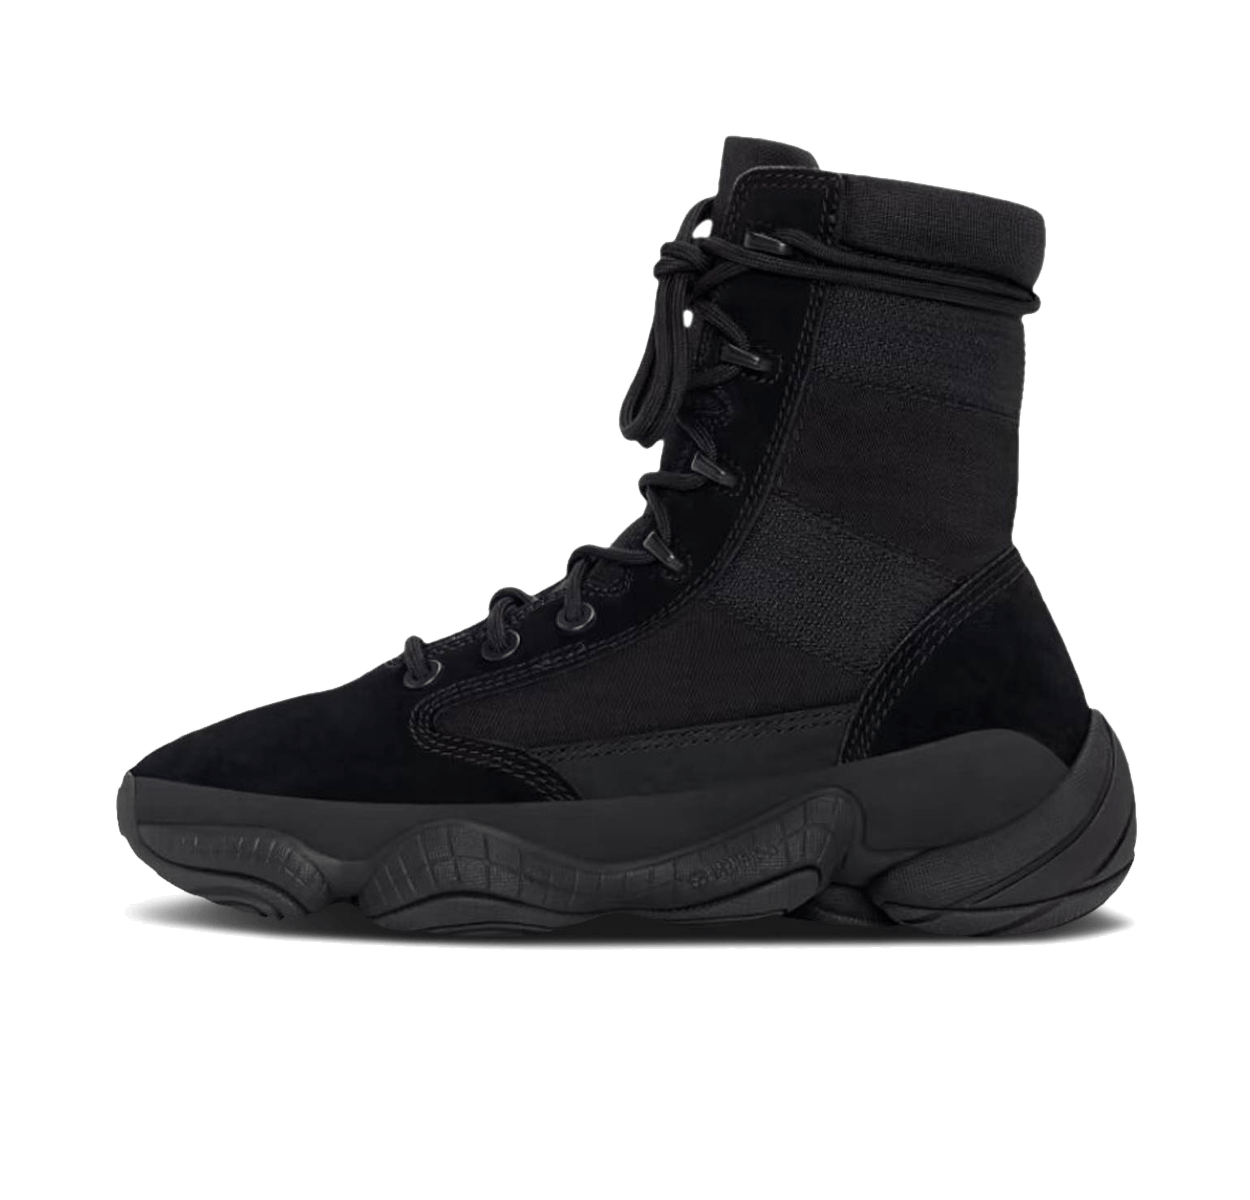 adidas Yeezy 500 Tactical Boot 'Utility Black' IG4693